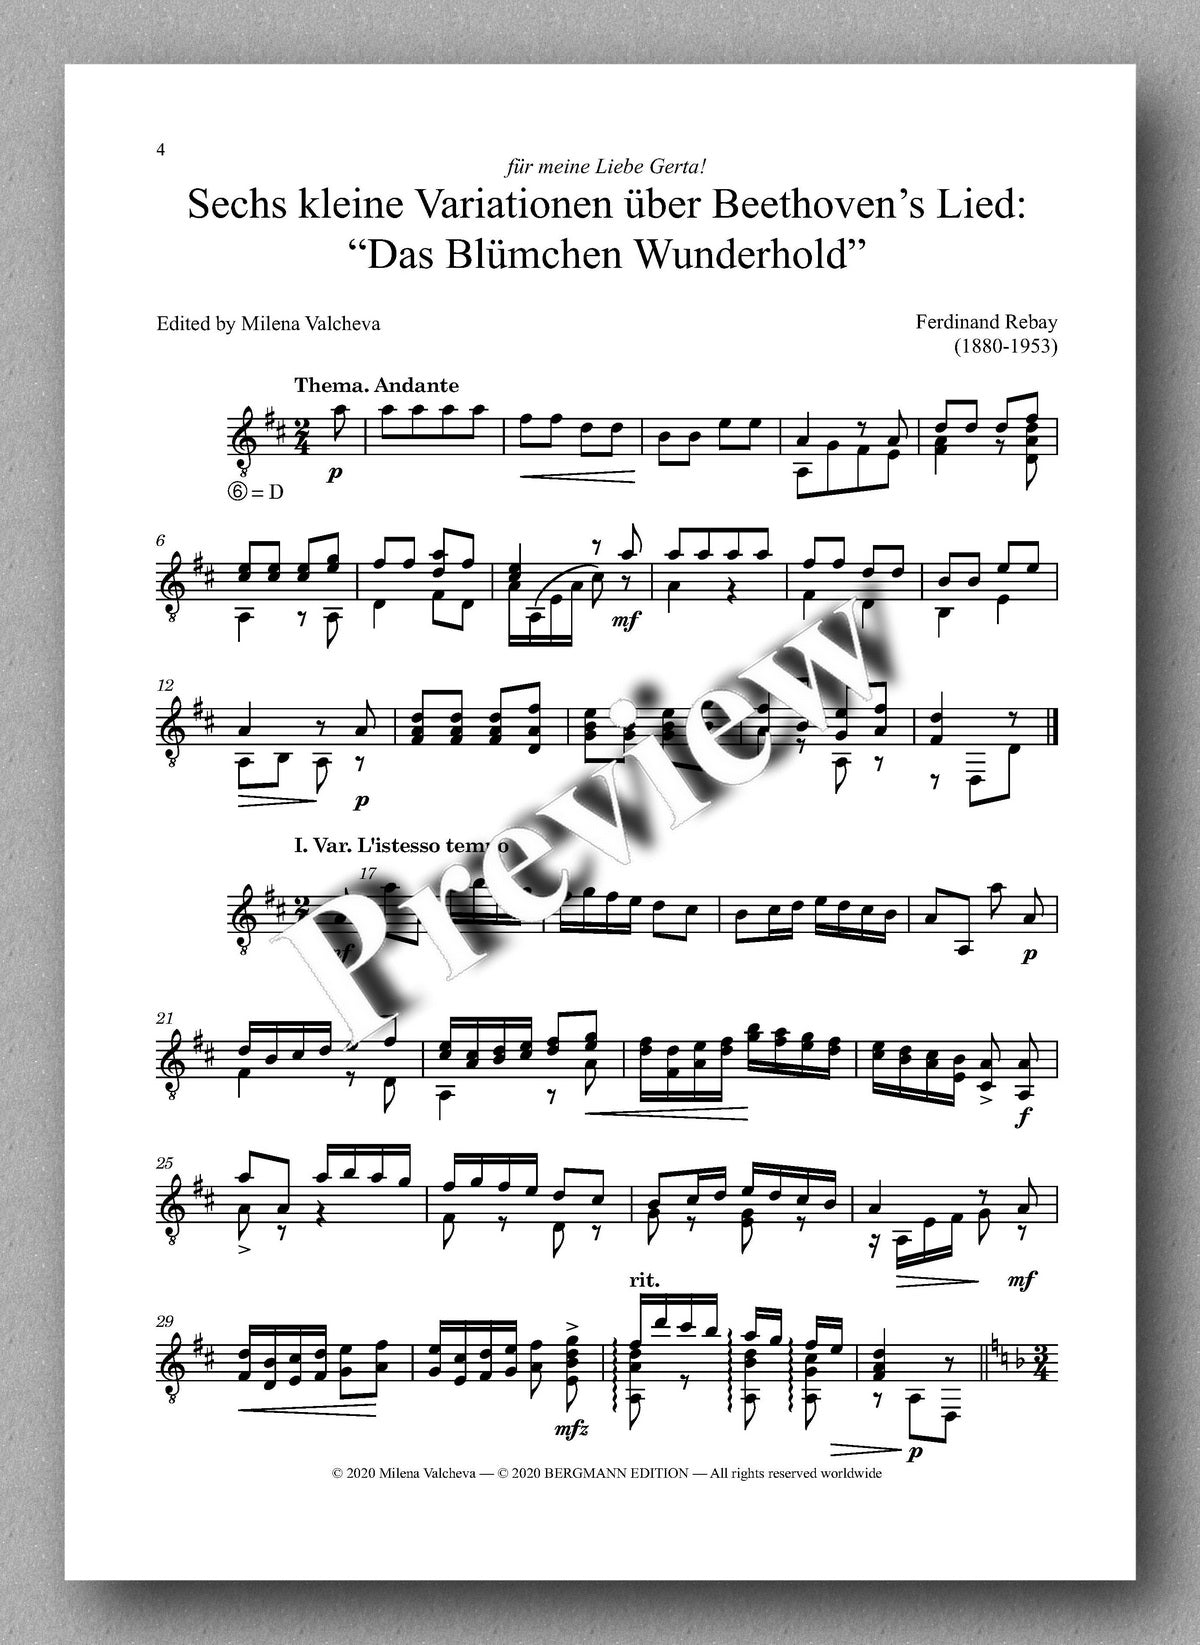 Rebay [153], Sechs kleine Variationen - preview of the music score 1